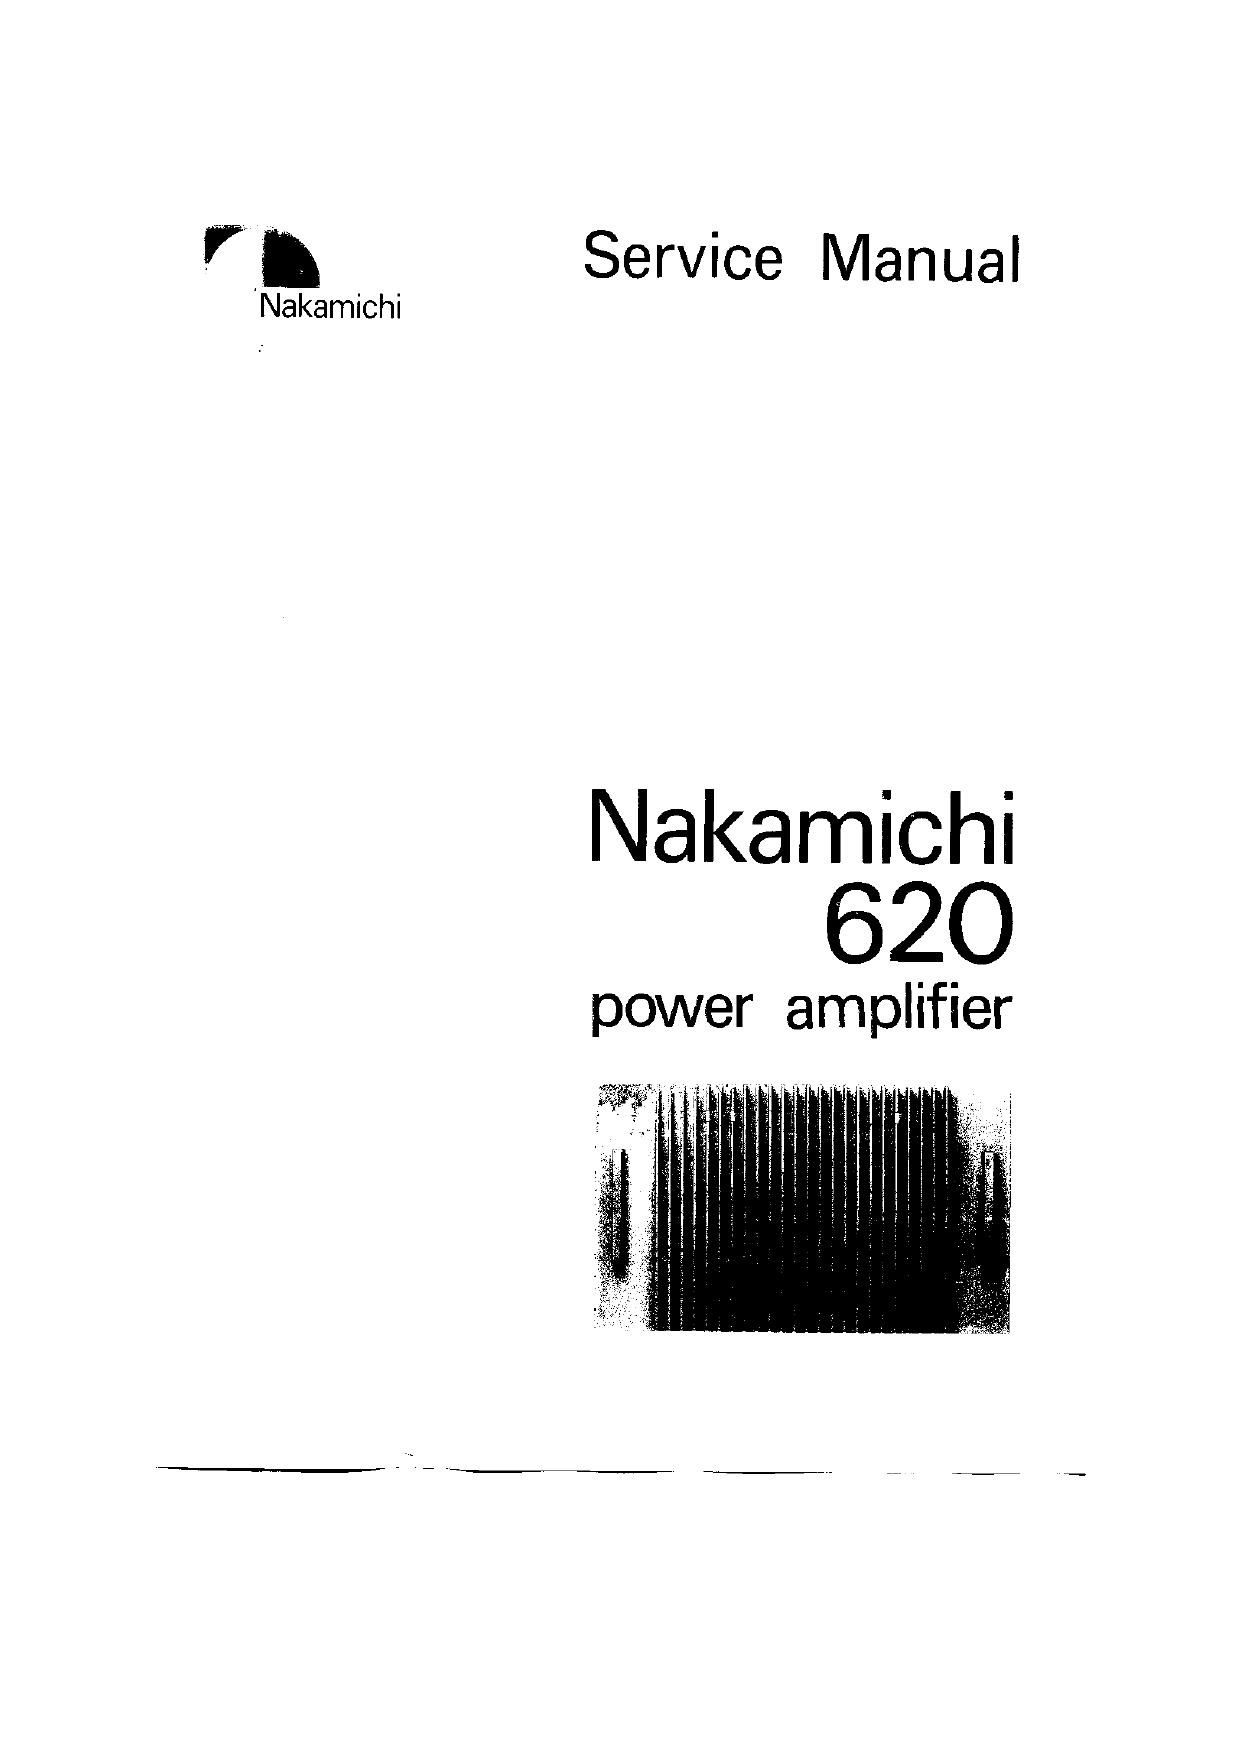 Nakamichi 620 Service Manual